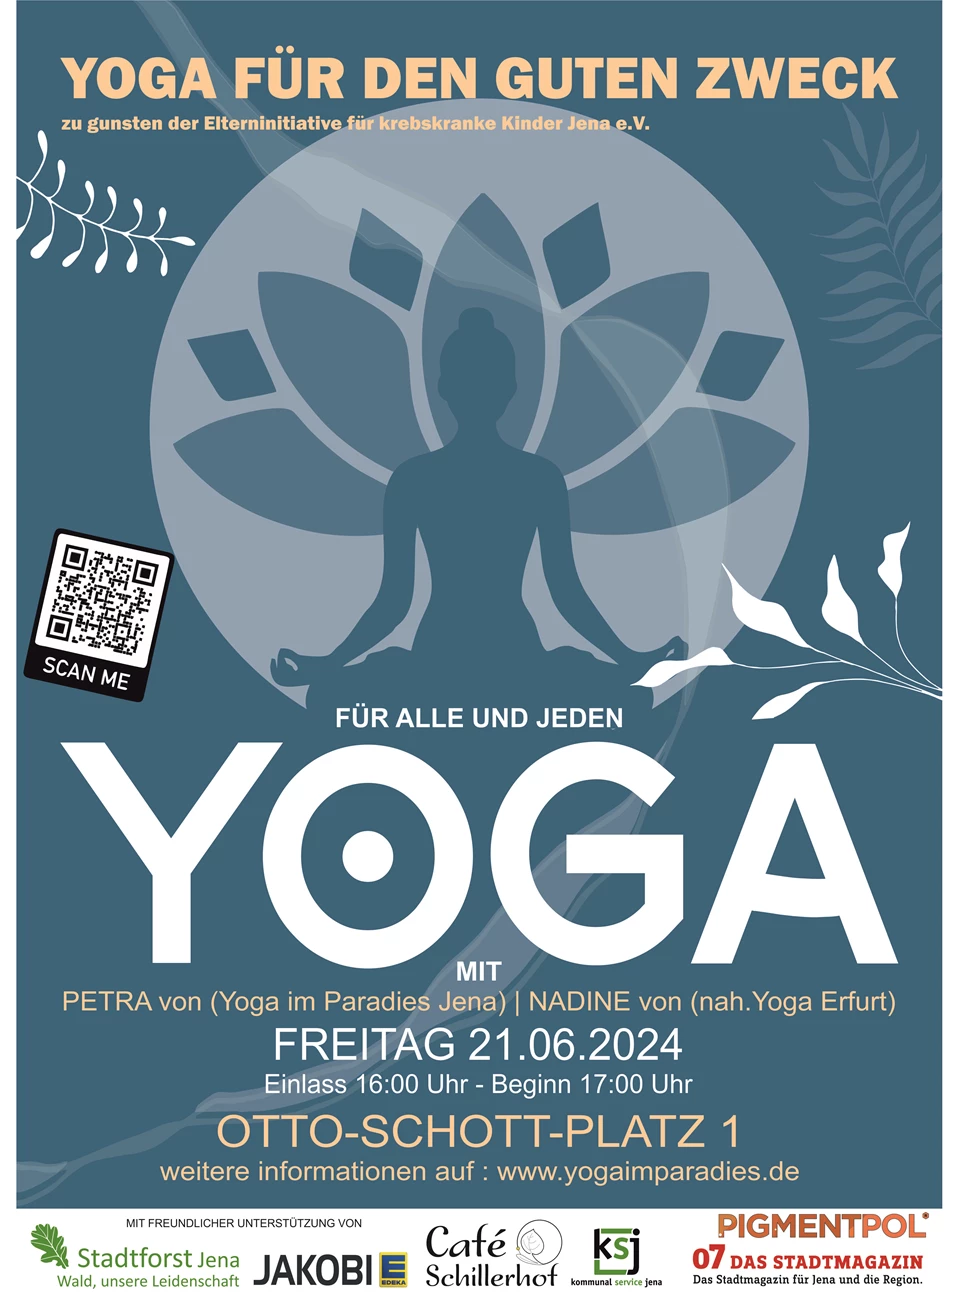 Ankündigung Event "Yoga für den guten Zweck"